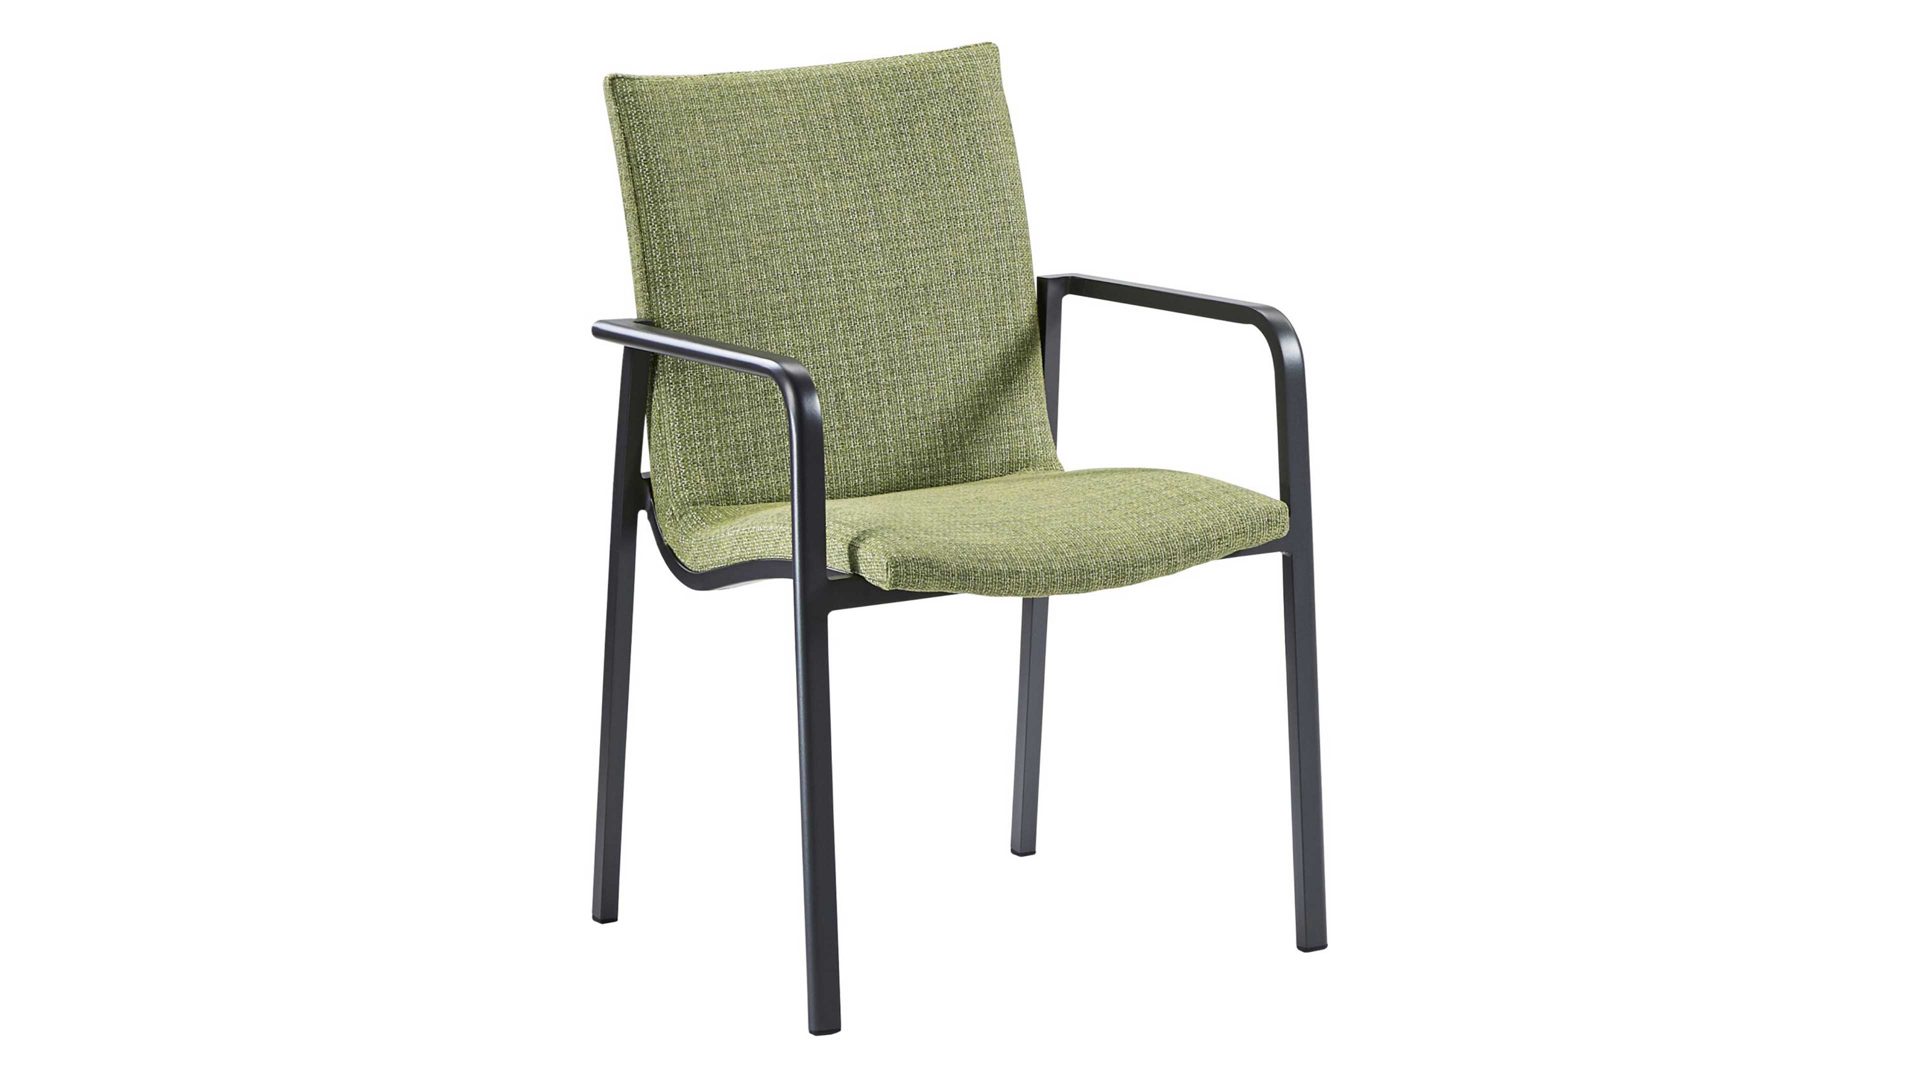 Gartenstuhl /-sessel Best freizeitmöbel aus Kunstfaser in Grün BEST FREIZEITMÖBEL Stapelstuhl Positano grüner Outdoorbezug & Aluminium